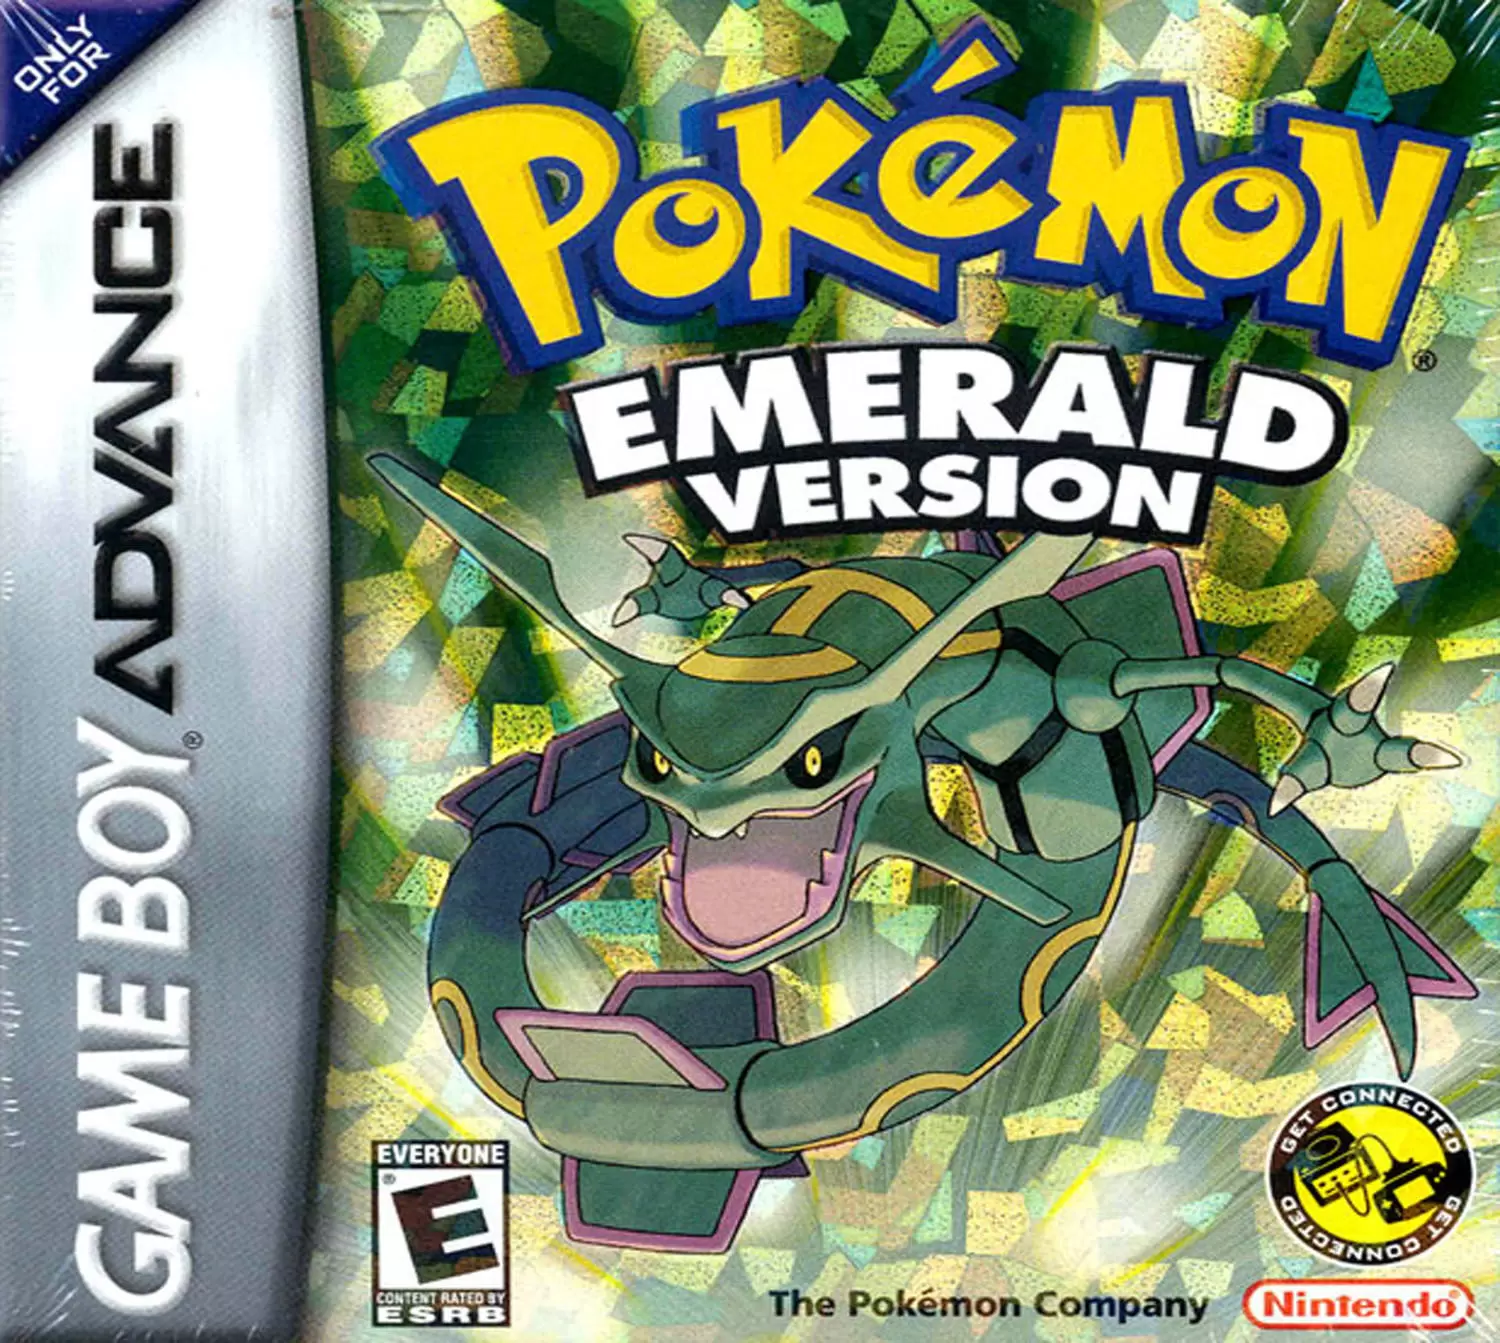 Game Boy Advance Games - Pokémon Emerald Version